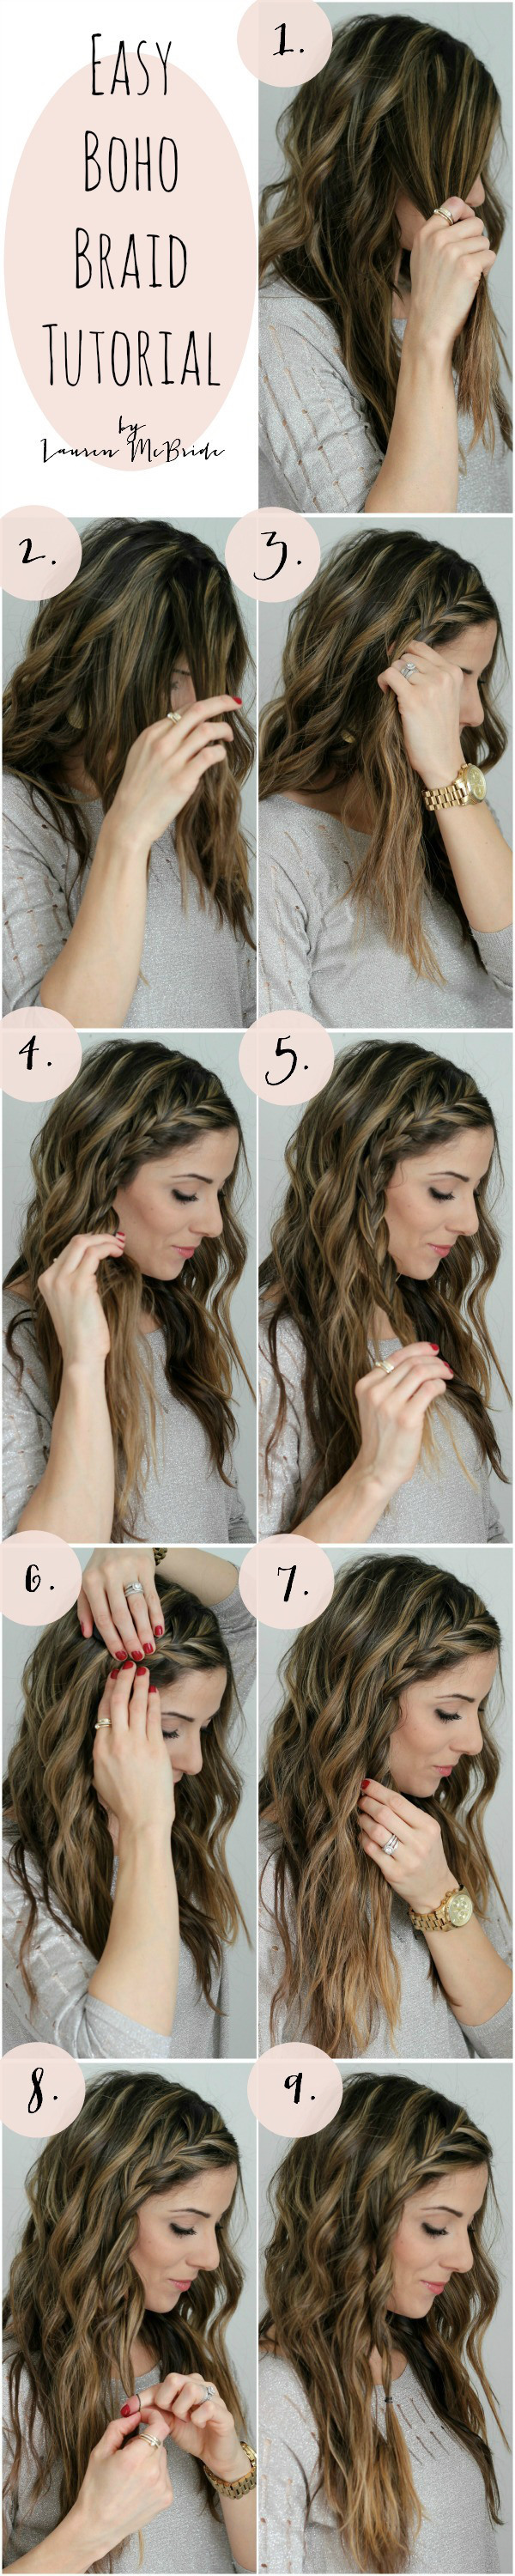 How to do a boho braid 